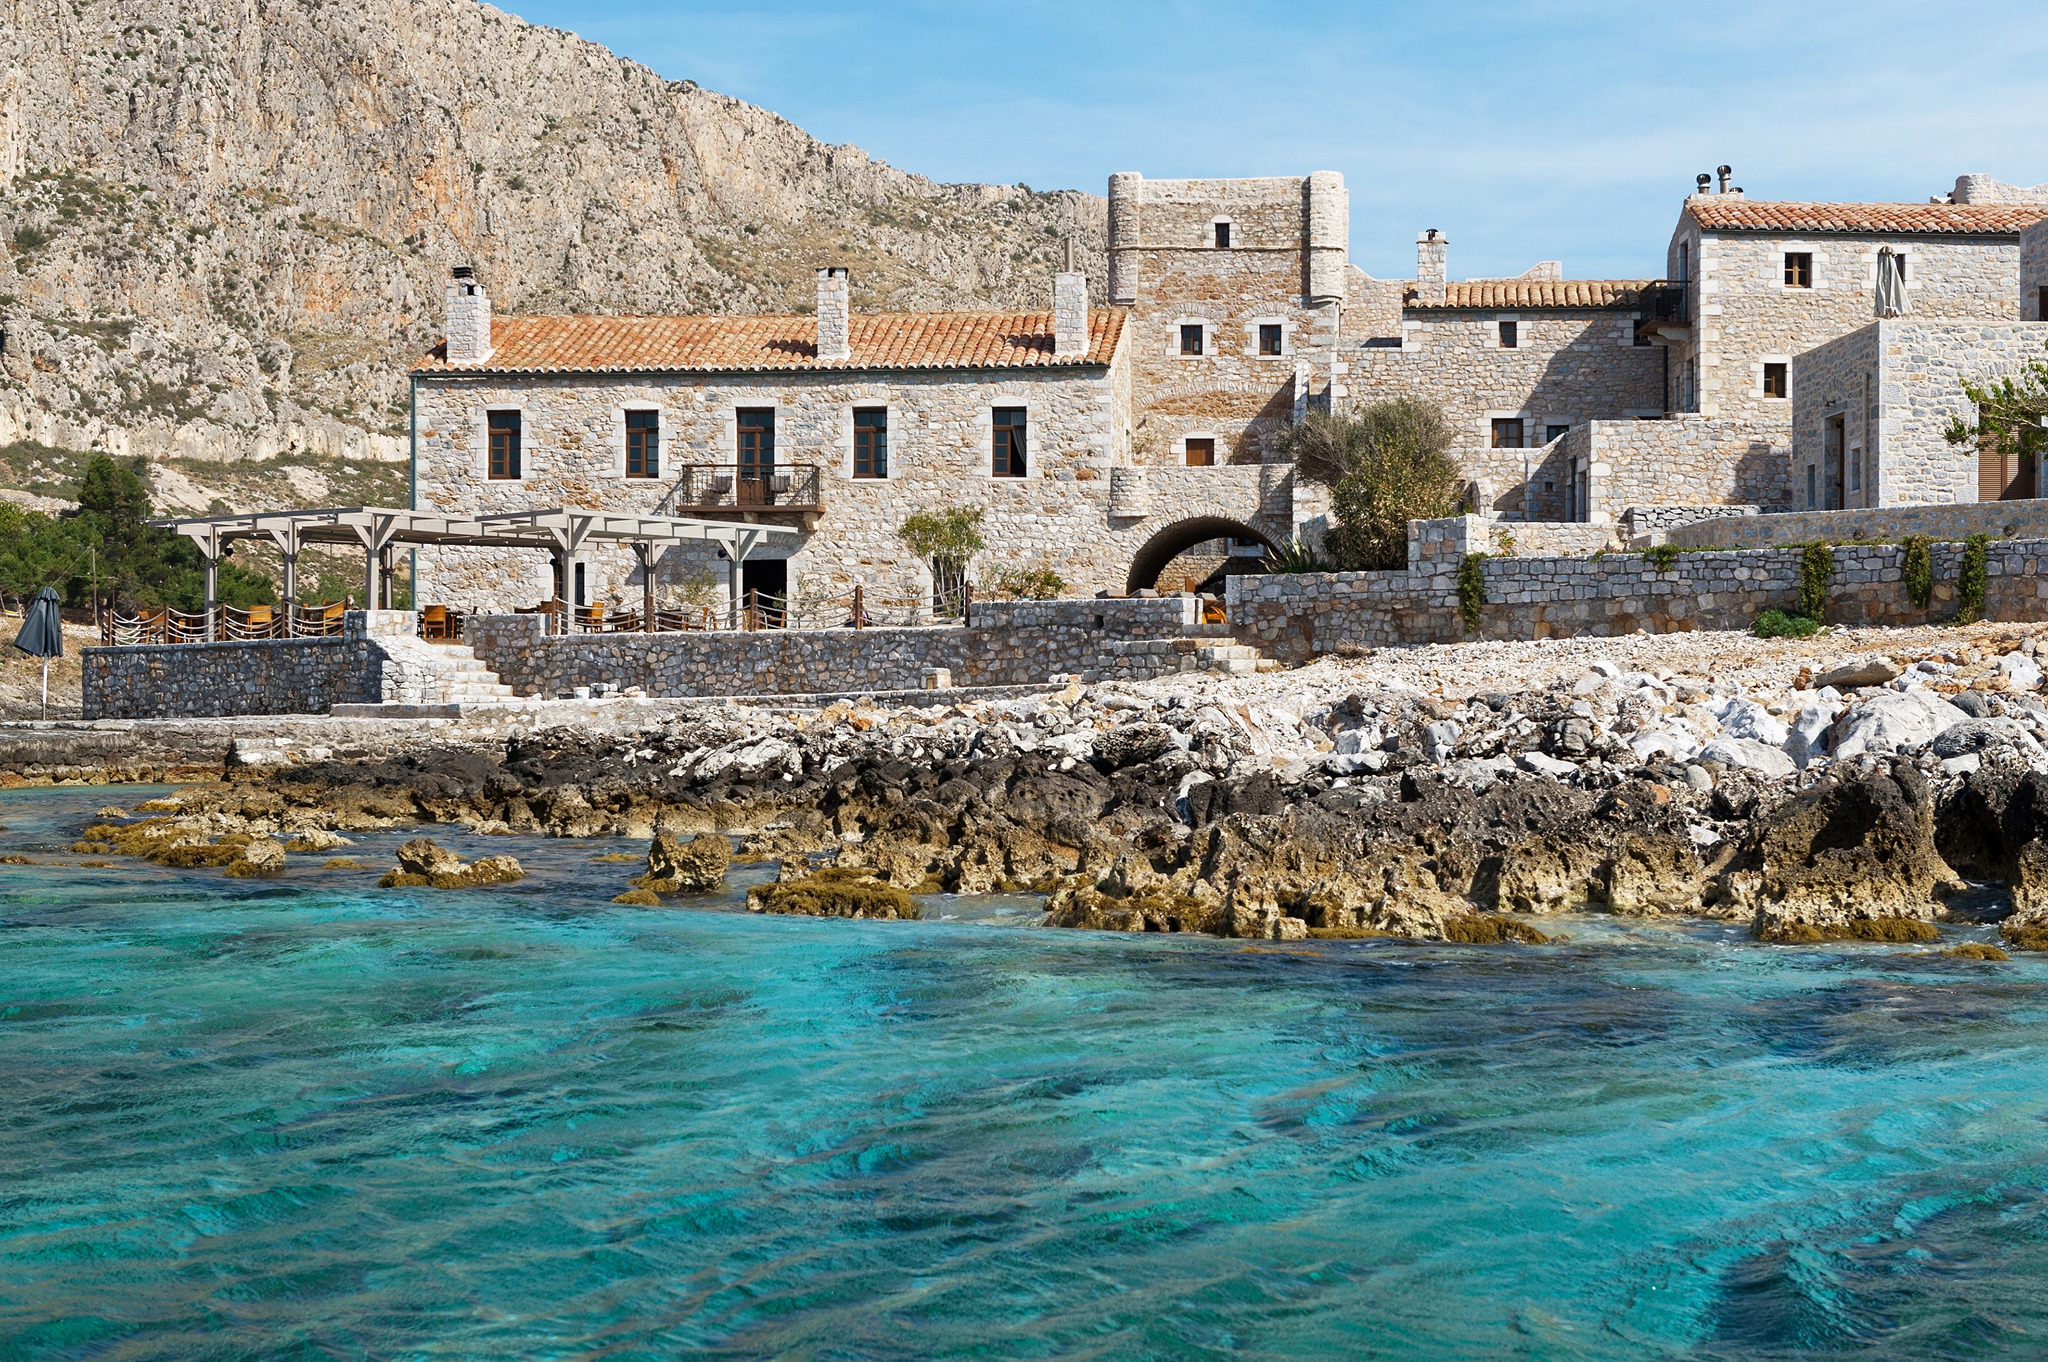 tourism in crete statistics